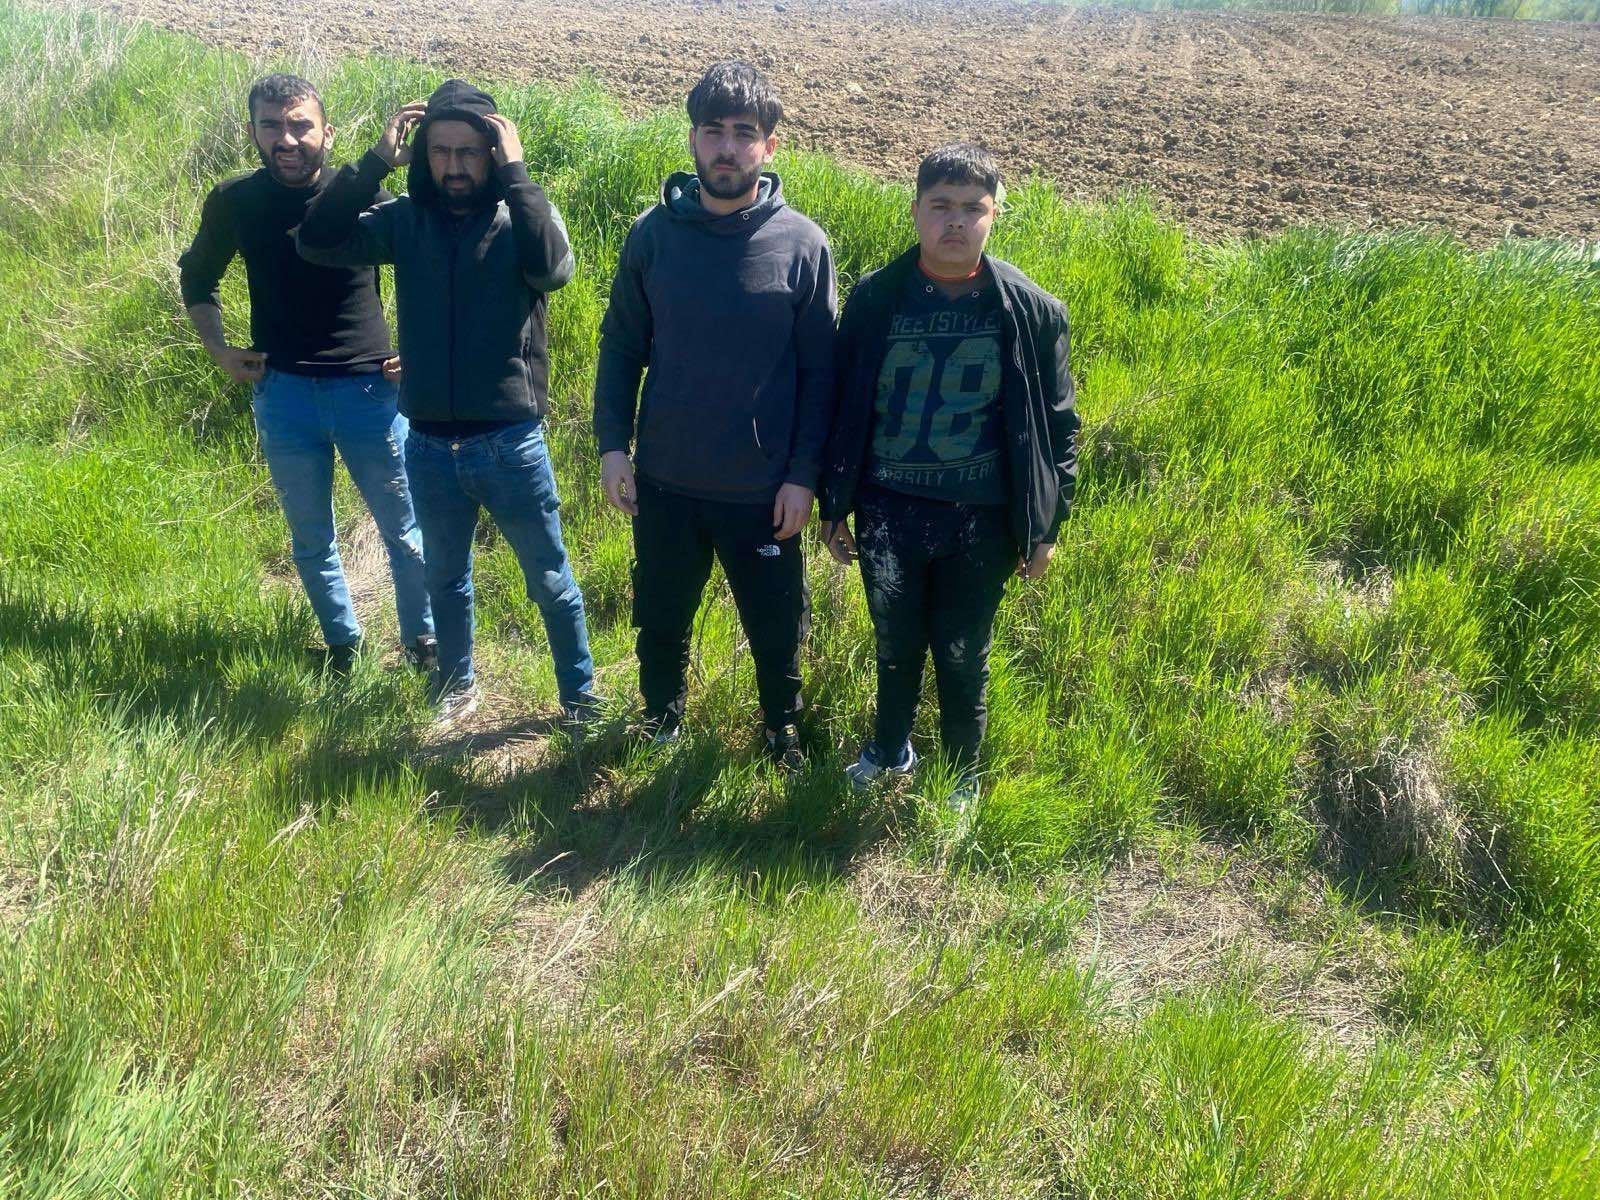 Edirne'de 4 kaçak göçmen yakalandı